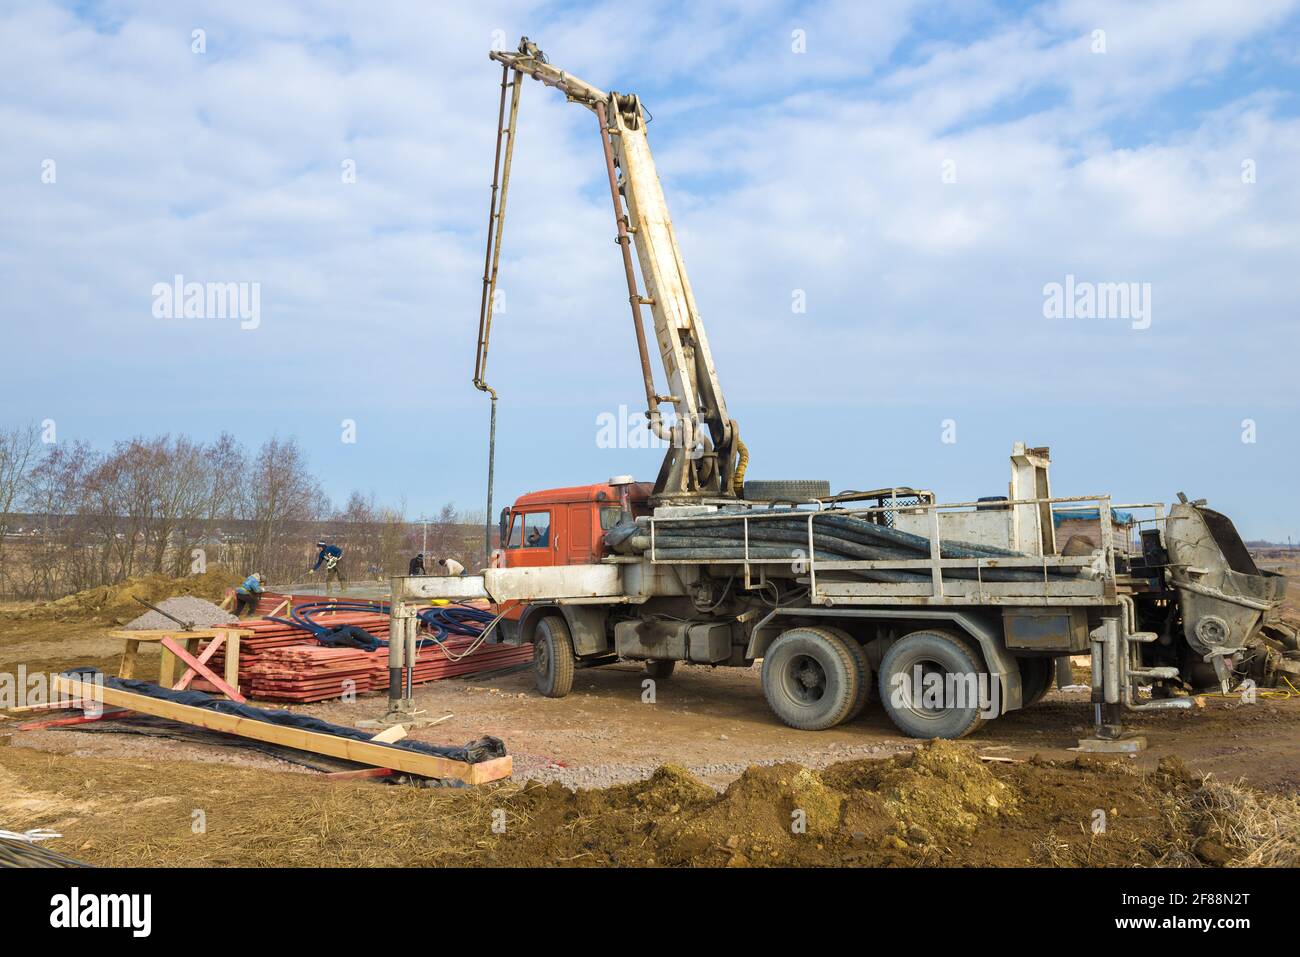 RÉGION DE LENINGRAD, RUSSIE - 28 MARS 2021 : une pompe à béton à base d'un  camion